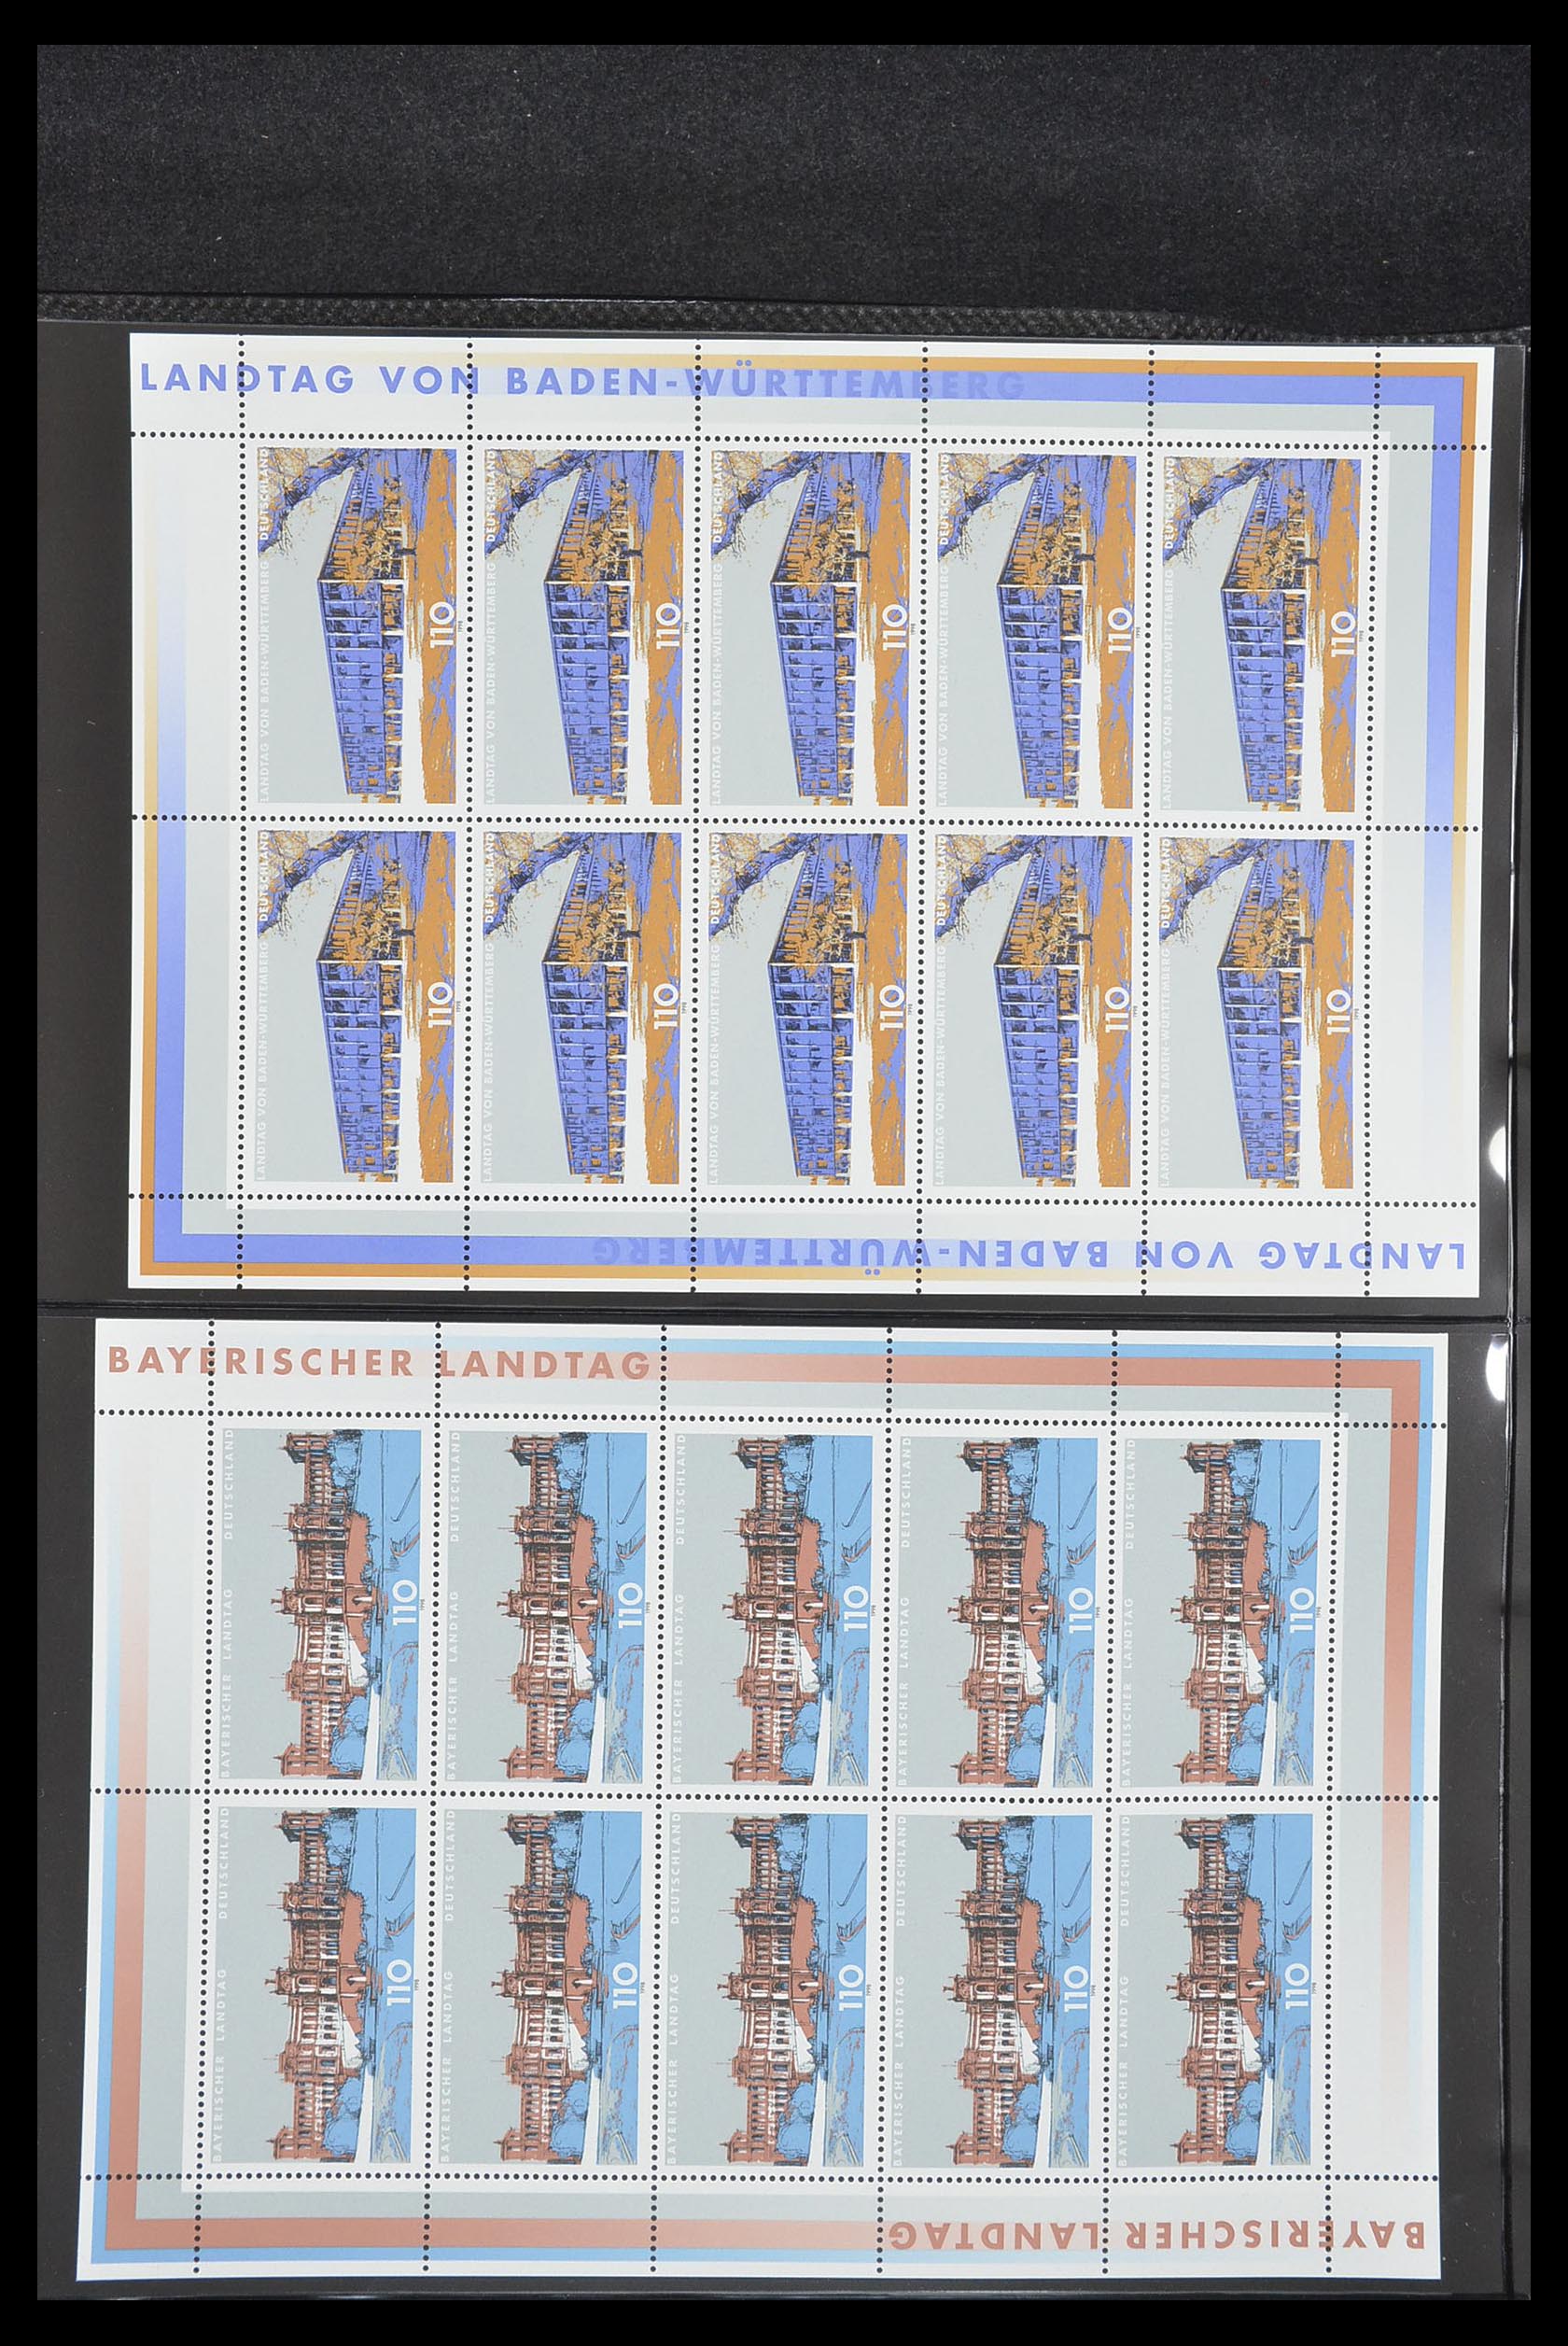 33936 093 - Stamp collection 33936 Bundespost kleinbogen 1994-2000.